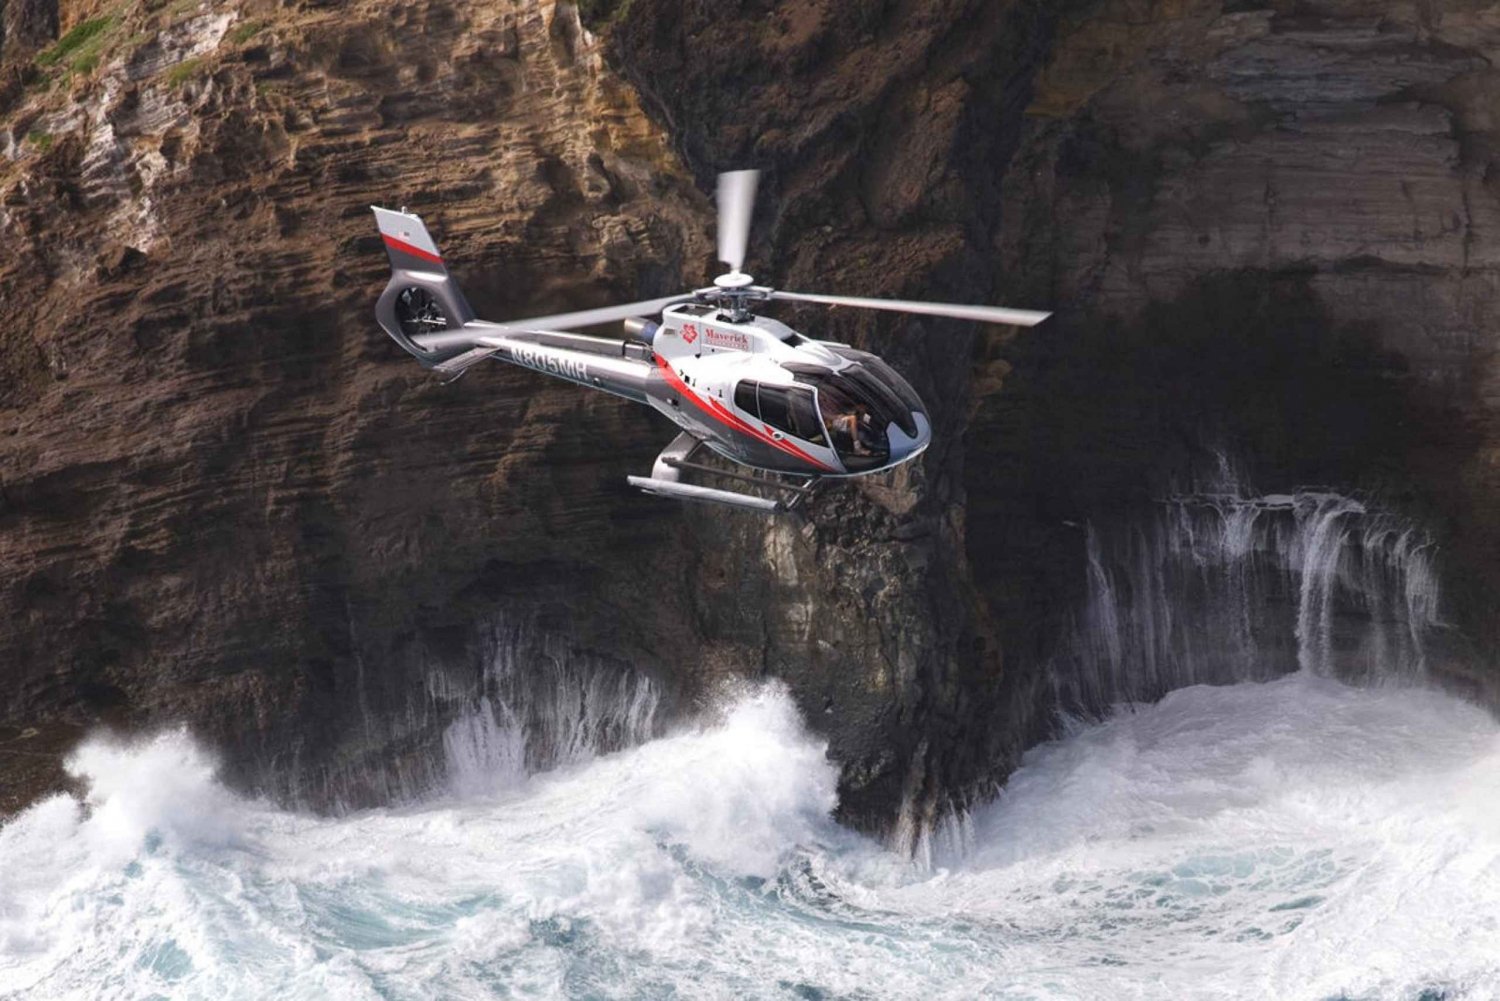 Centrala Maui: Helikopterflygning till Molokai med utsikt över två öar